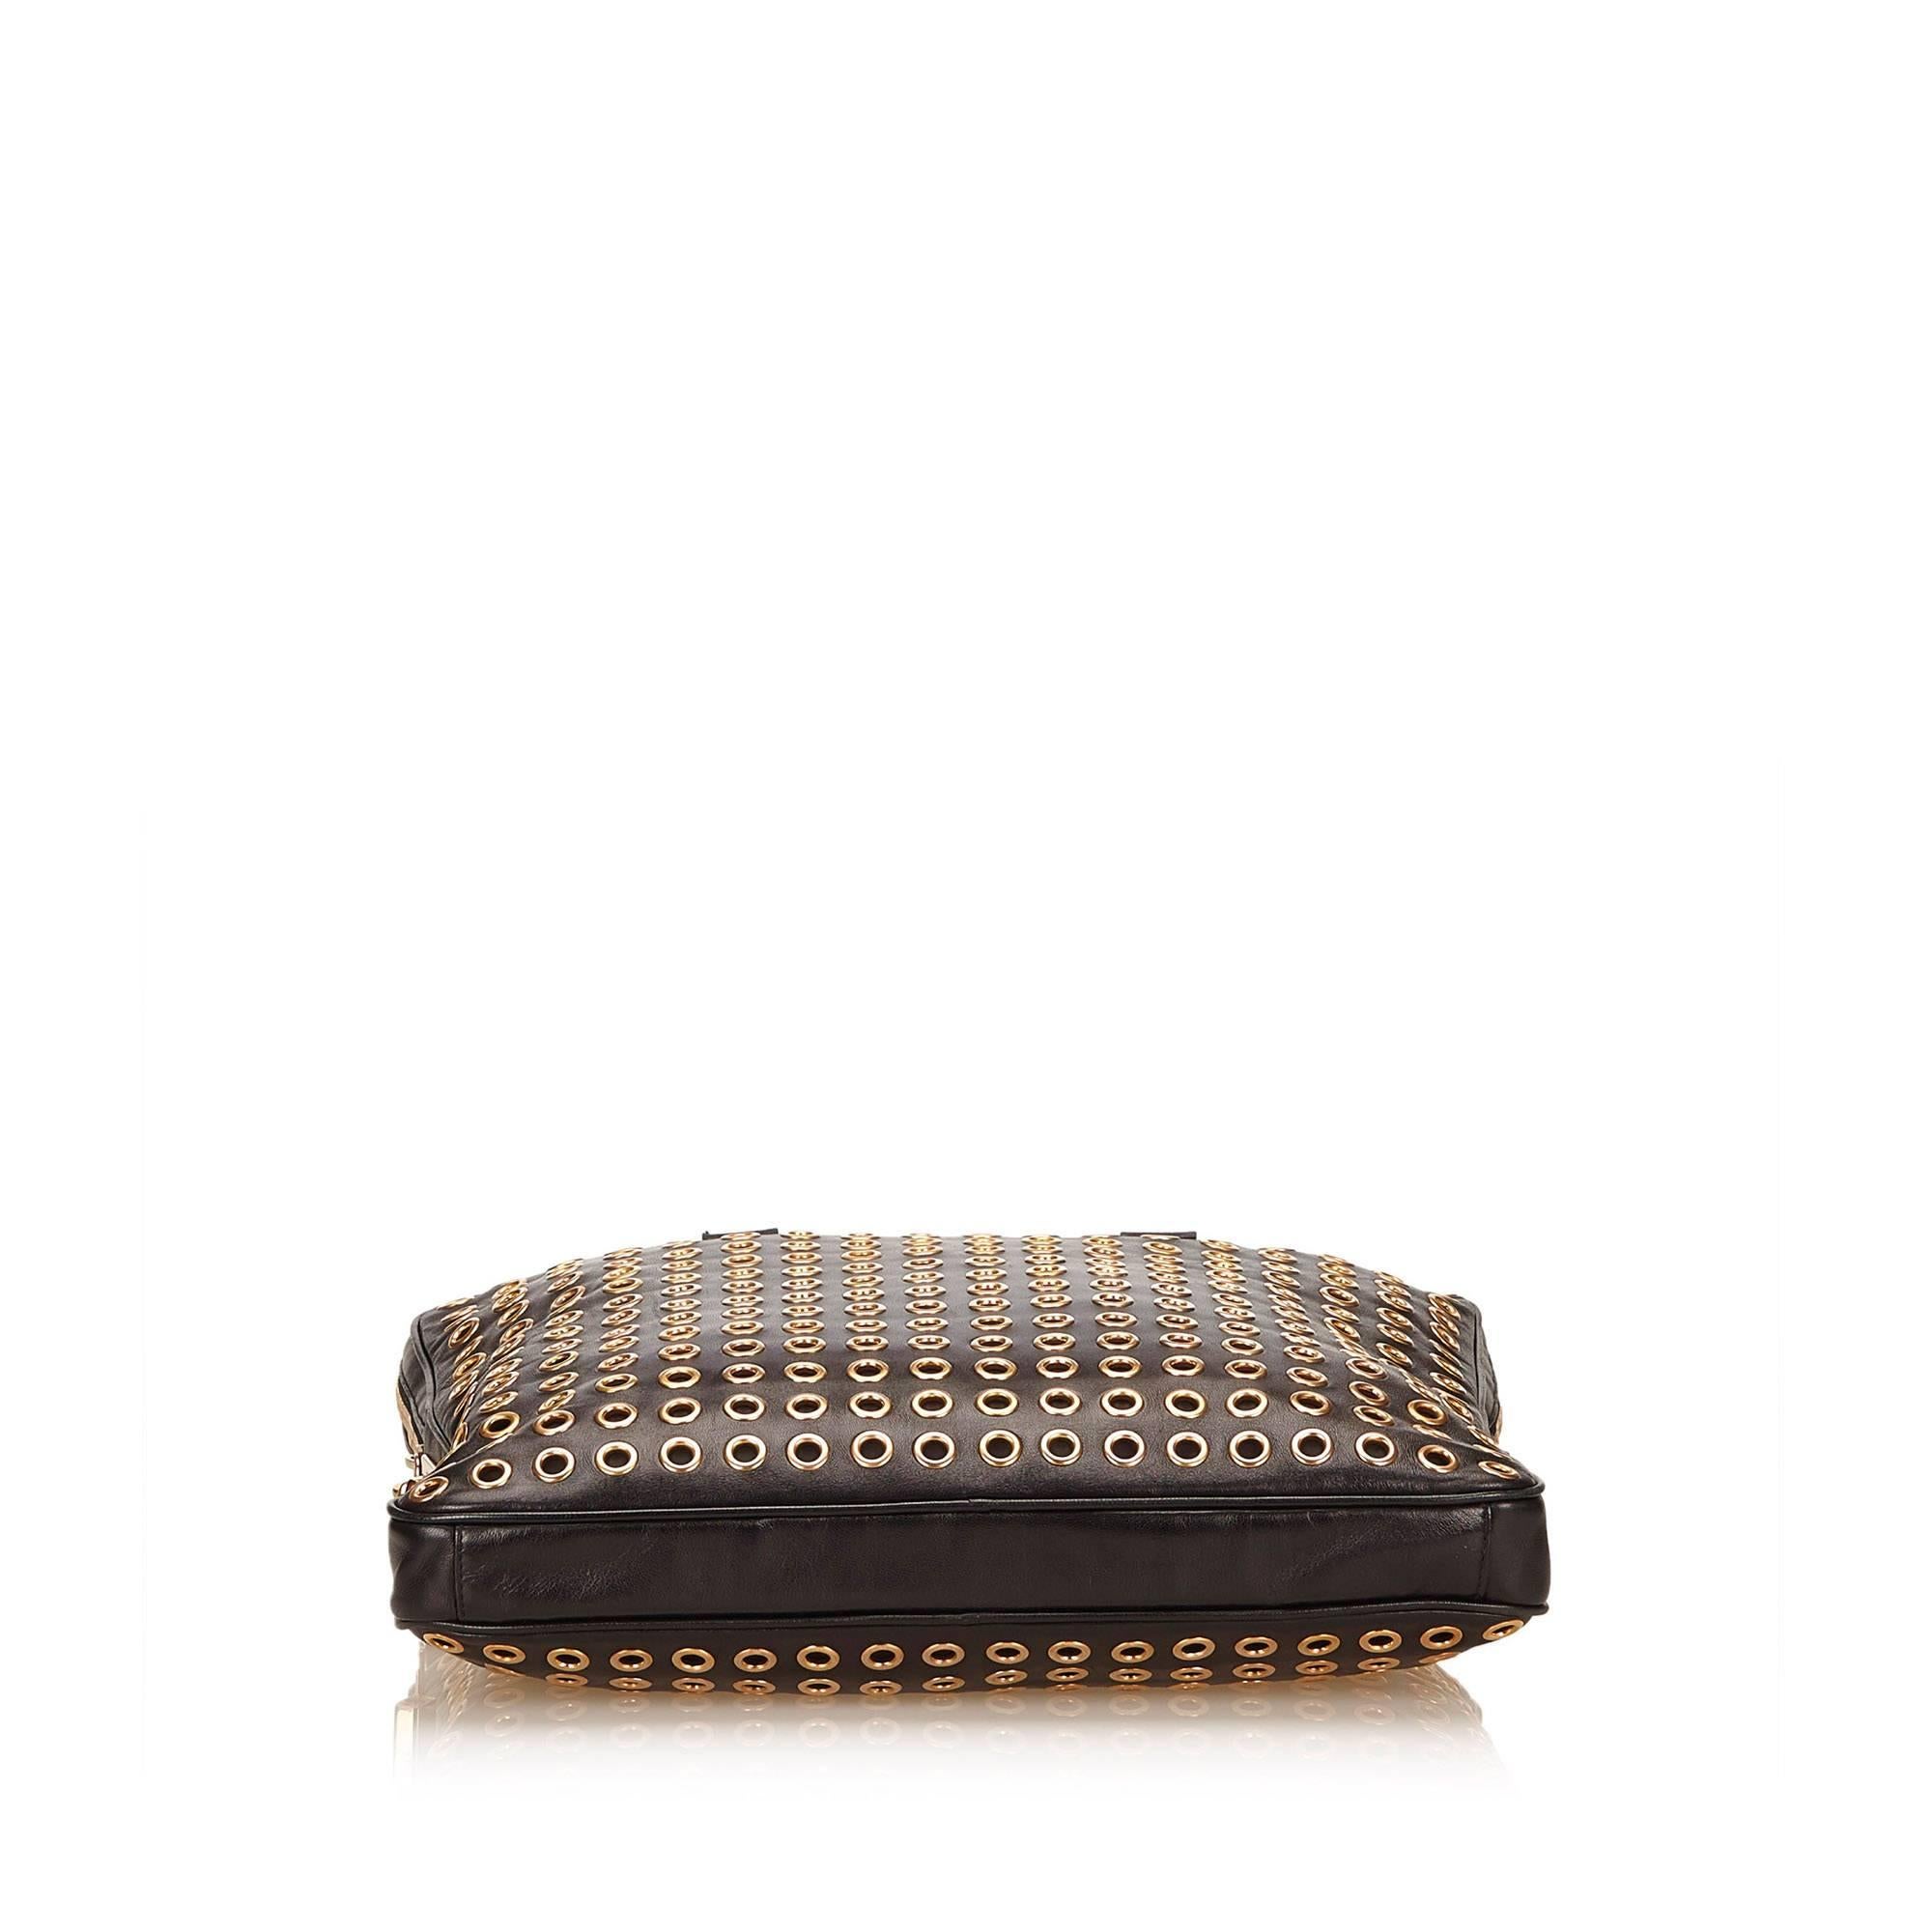 Prada Black Leather Gold Toned Eyelet Handbag 1